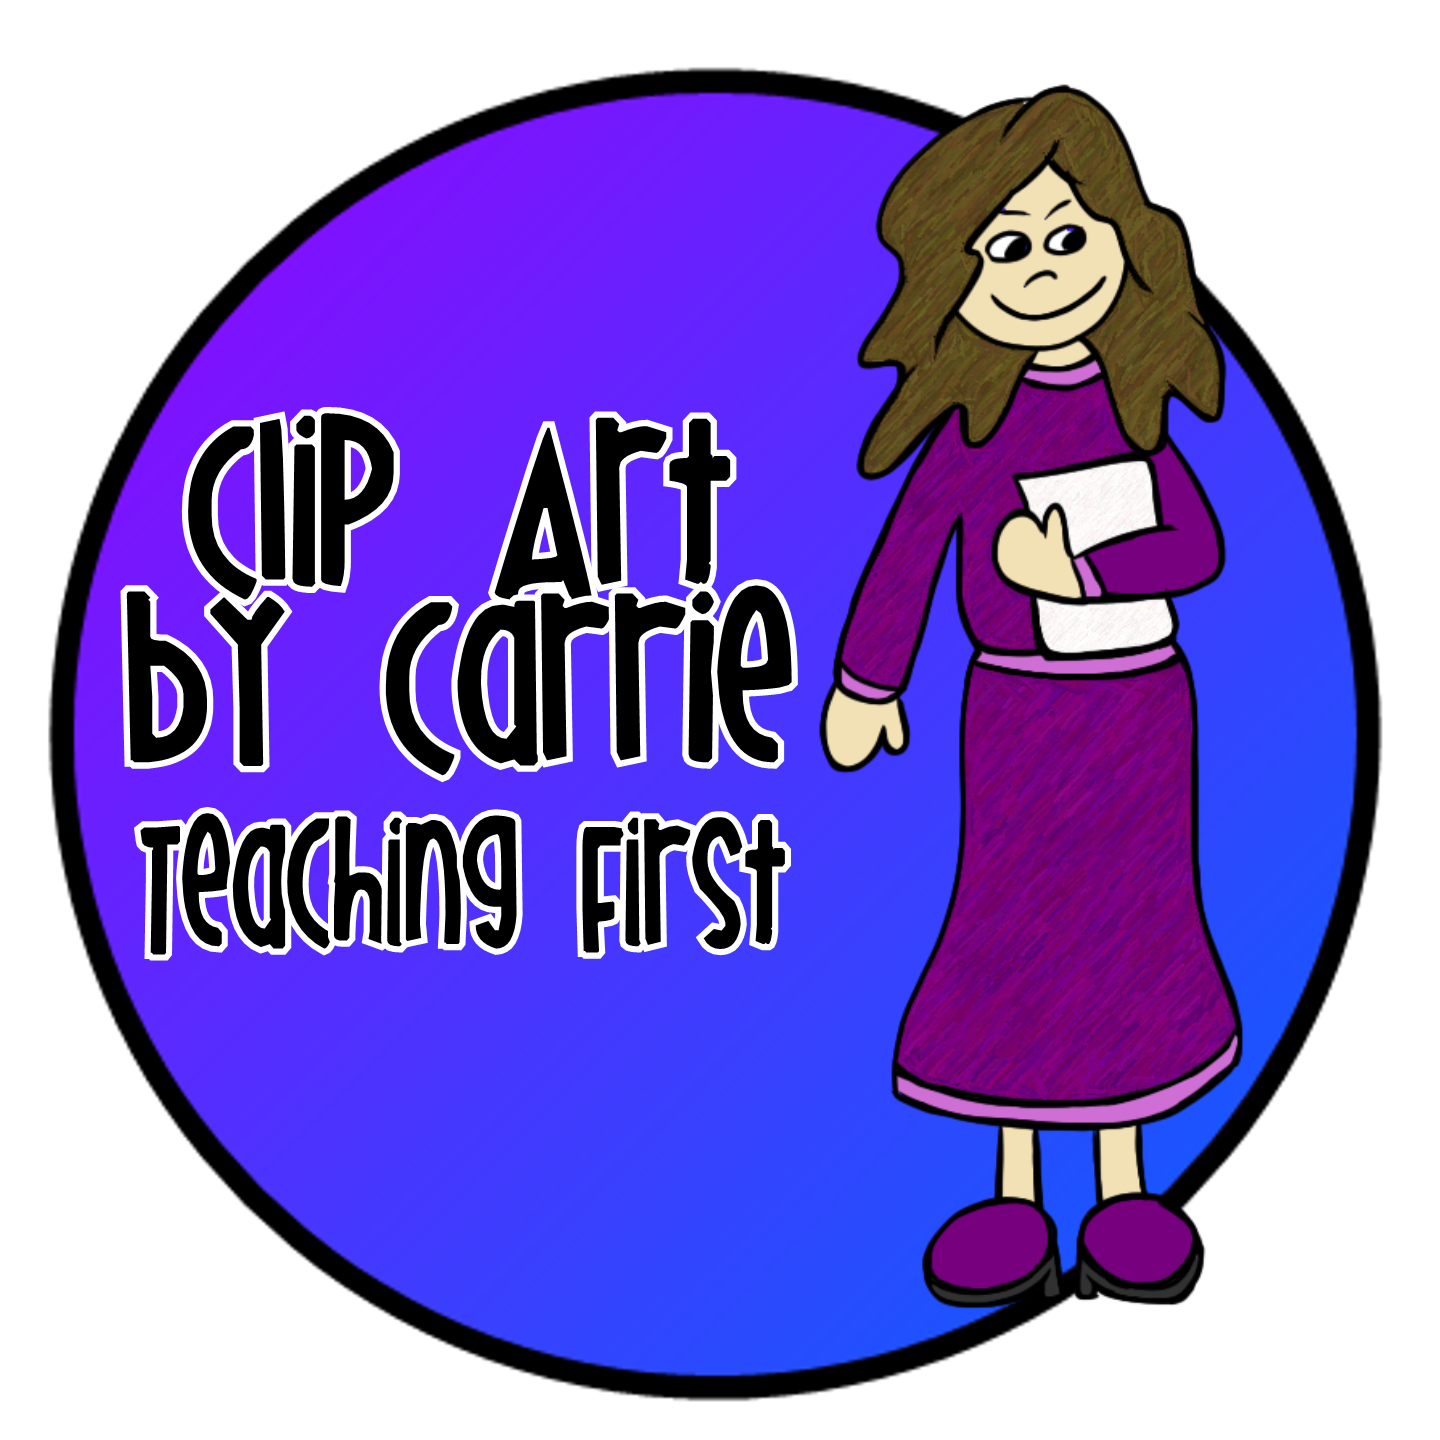 Clip Art by Carrie Teaching First: Clip Art Doodles